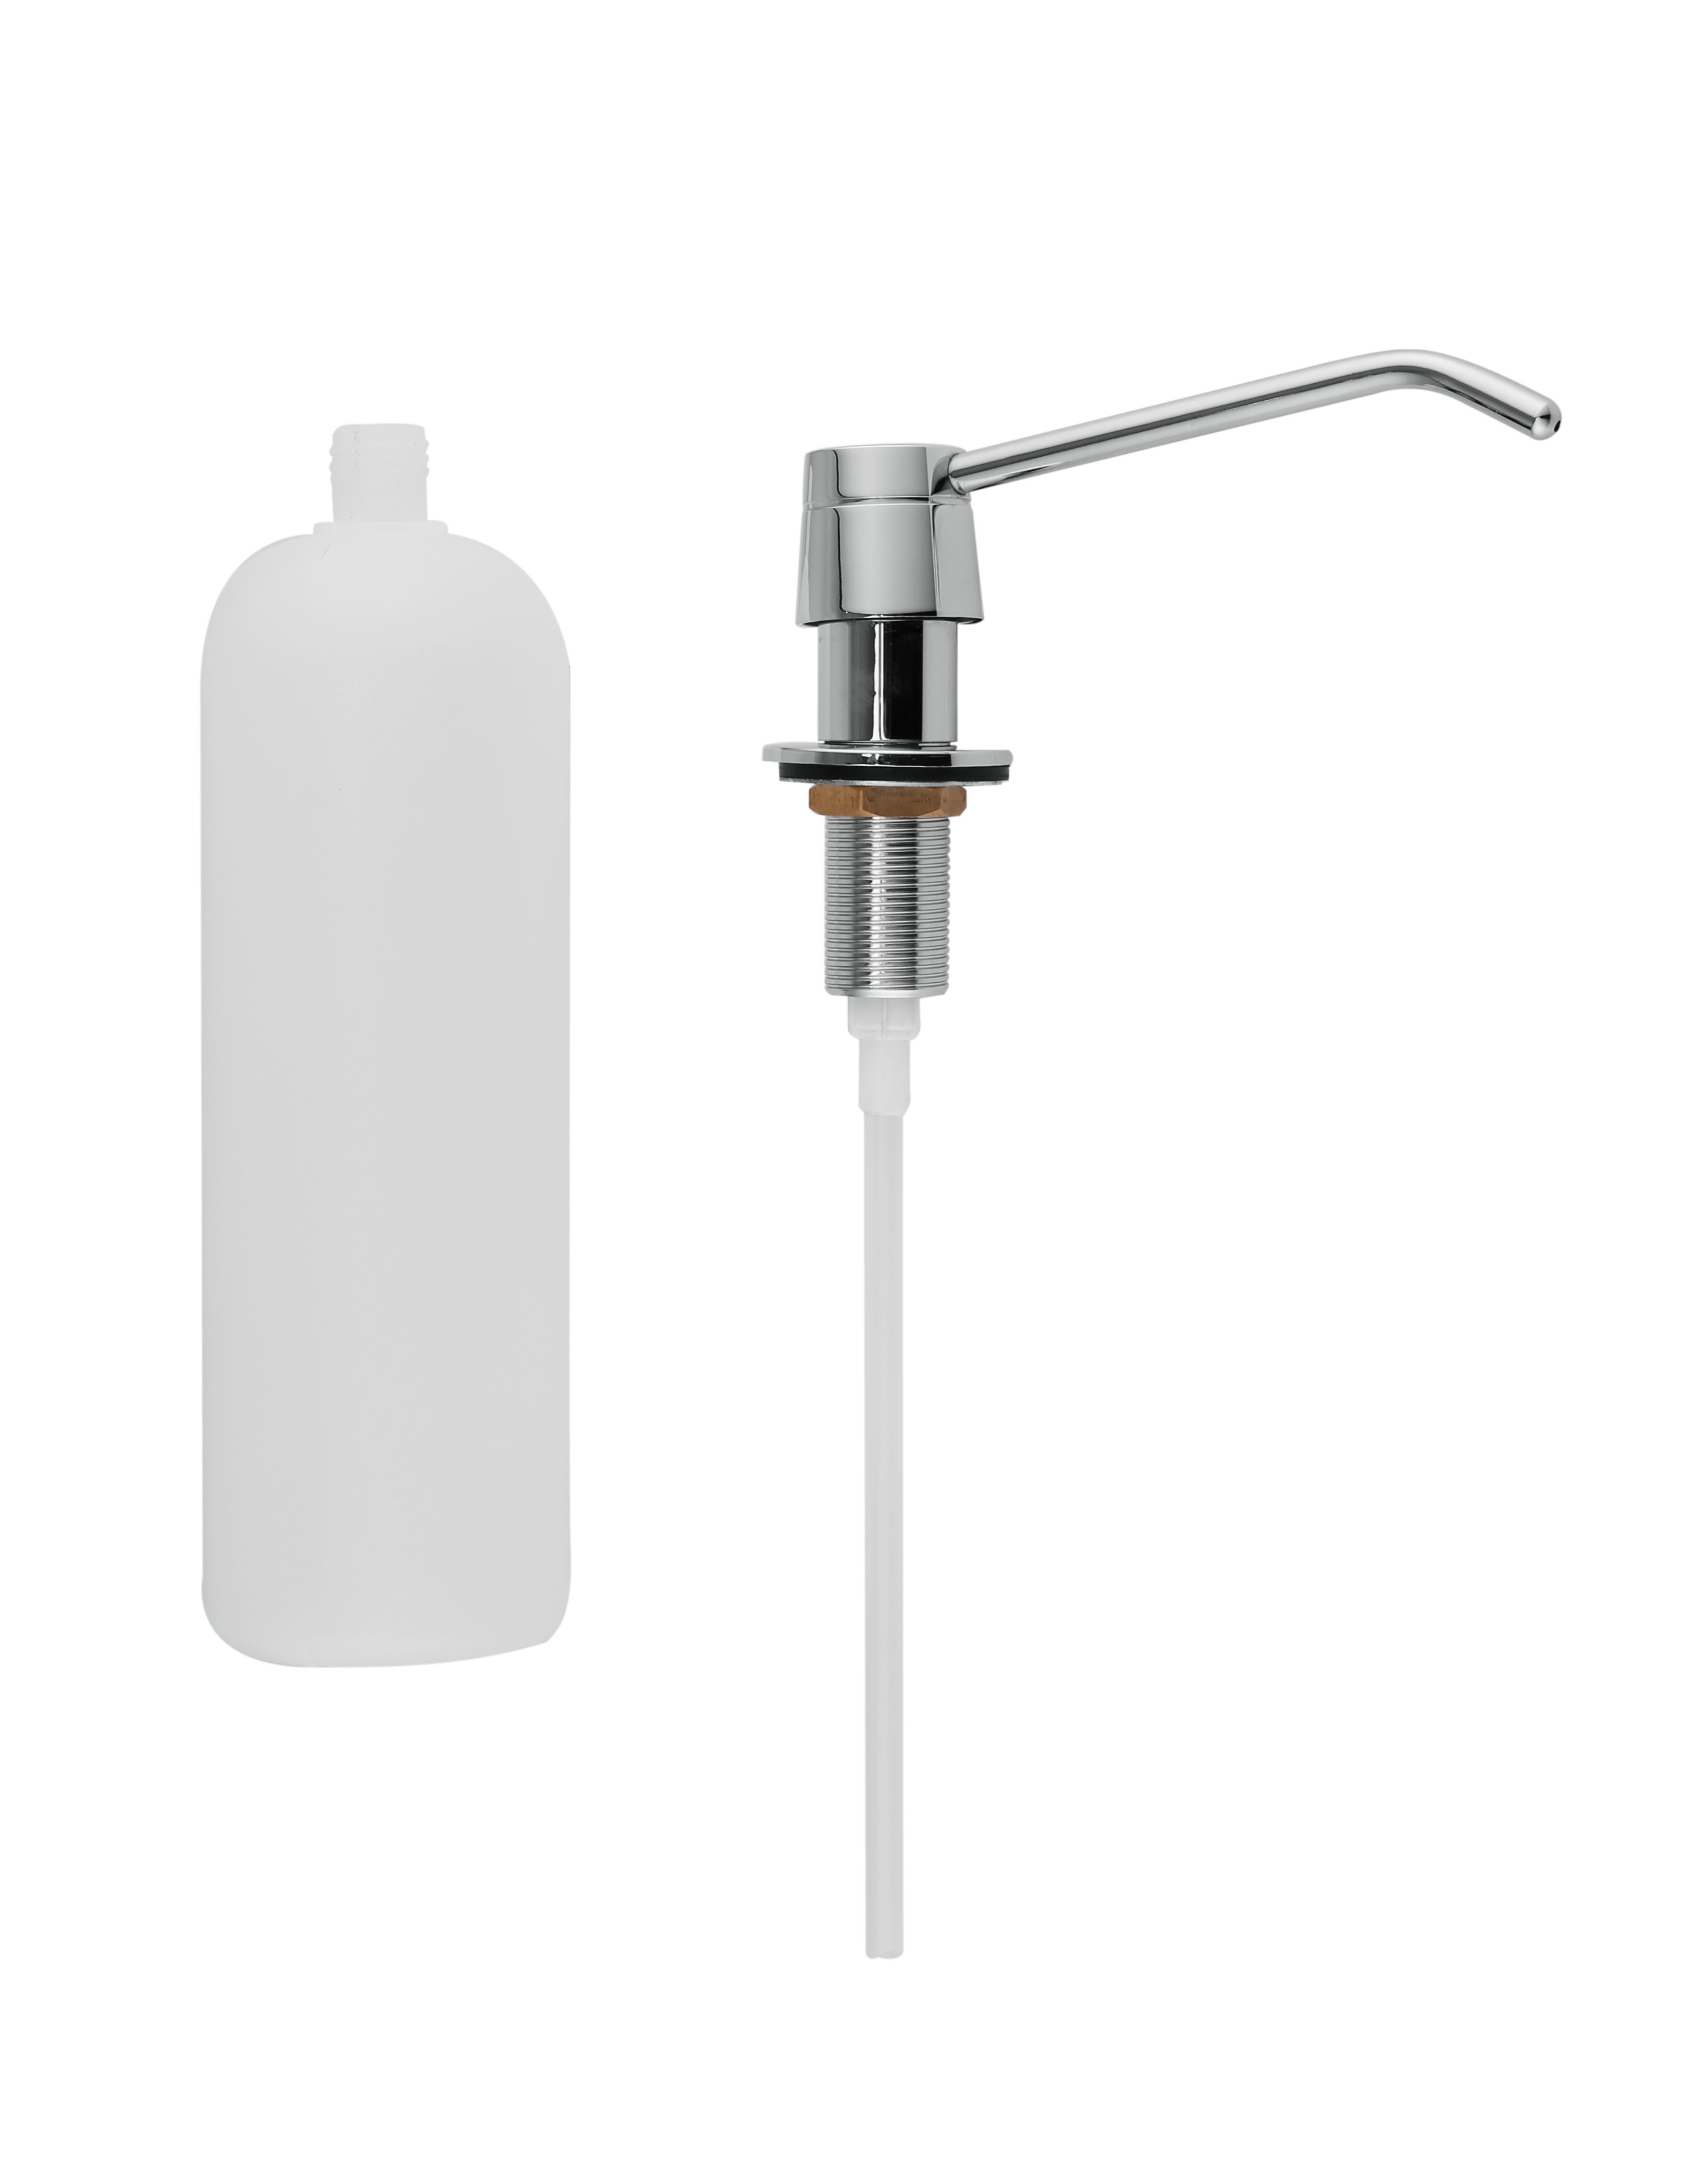 1000ml Plastic Basin Sink Soap Dispenser